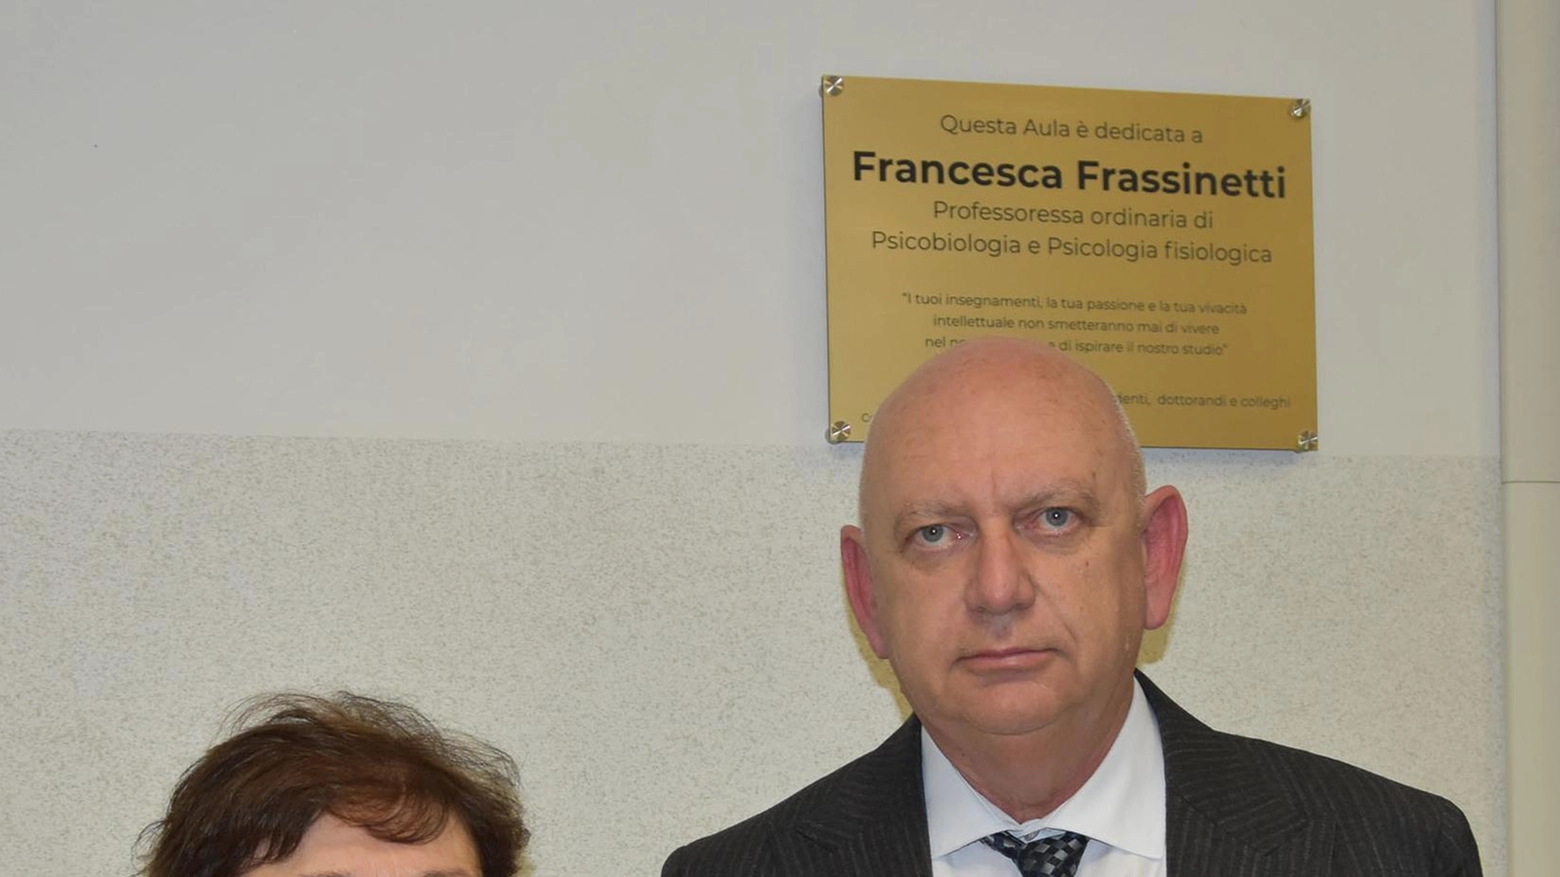 Aula alla memoria della professoressa. Francesca Frassinetti